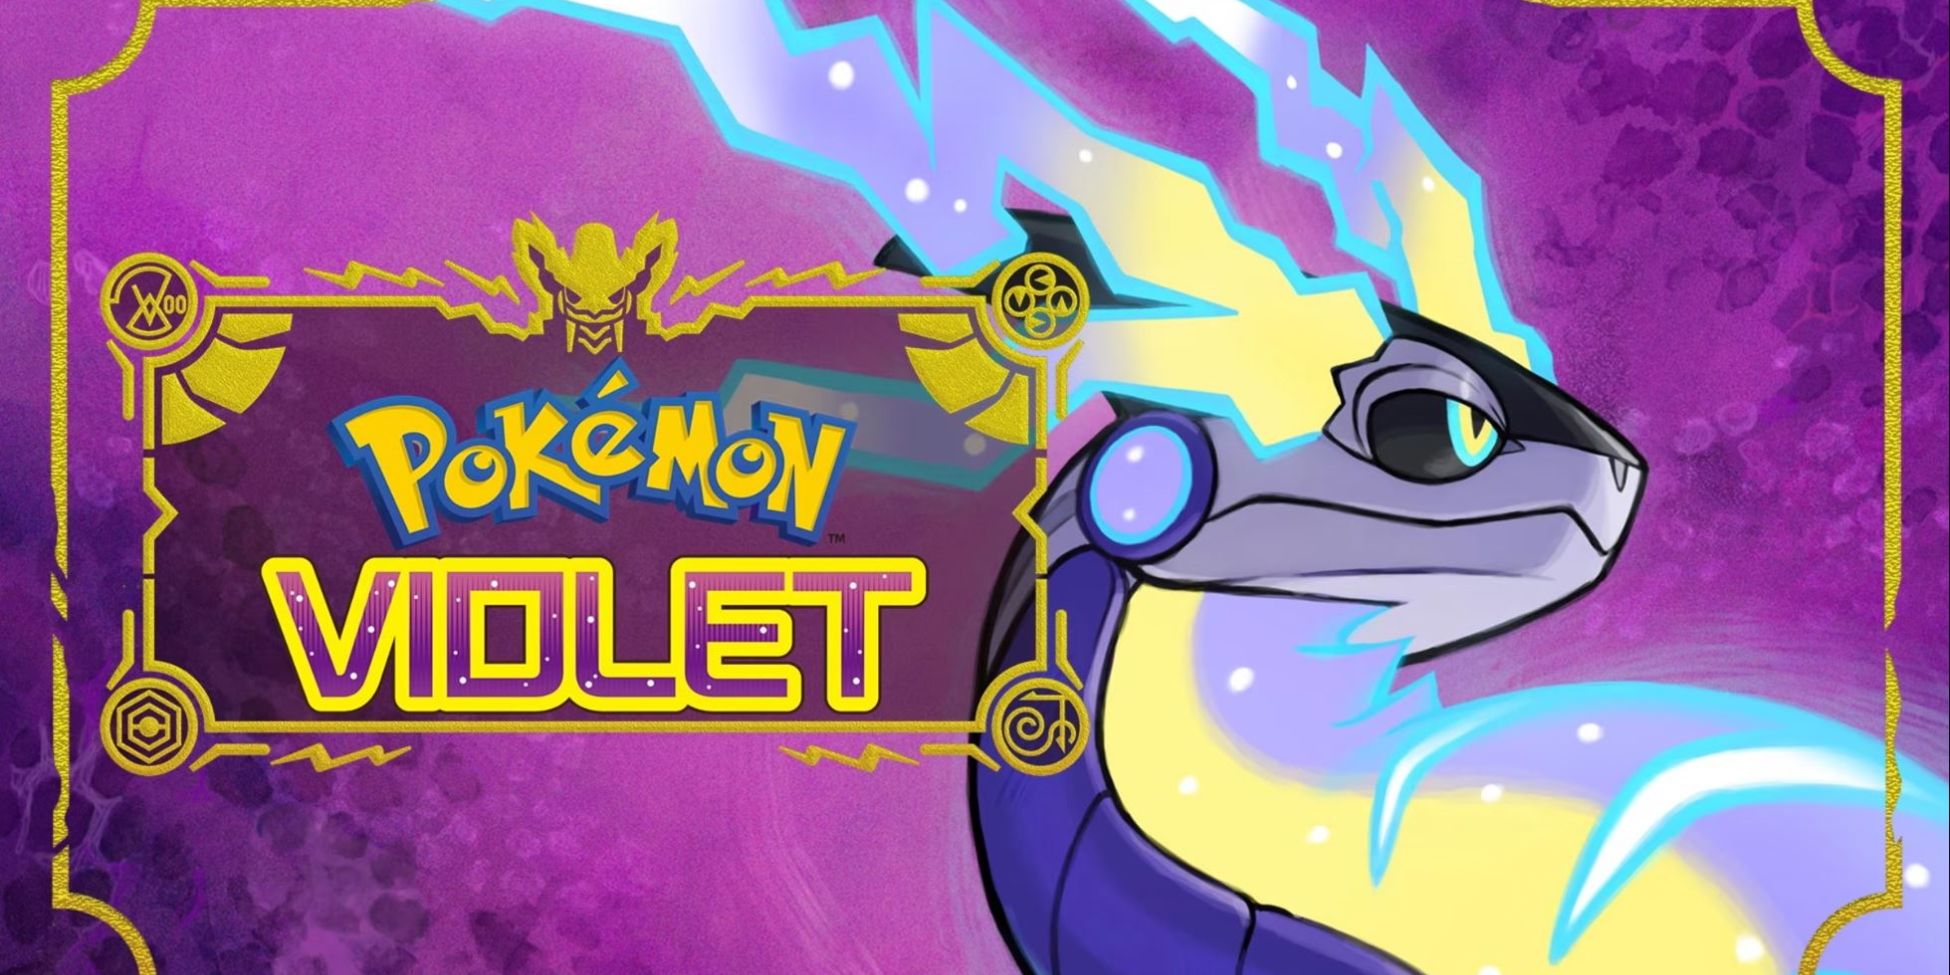 Cover art featuring Miraidon next to Pokémon Violet's logo.